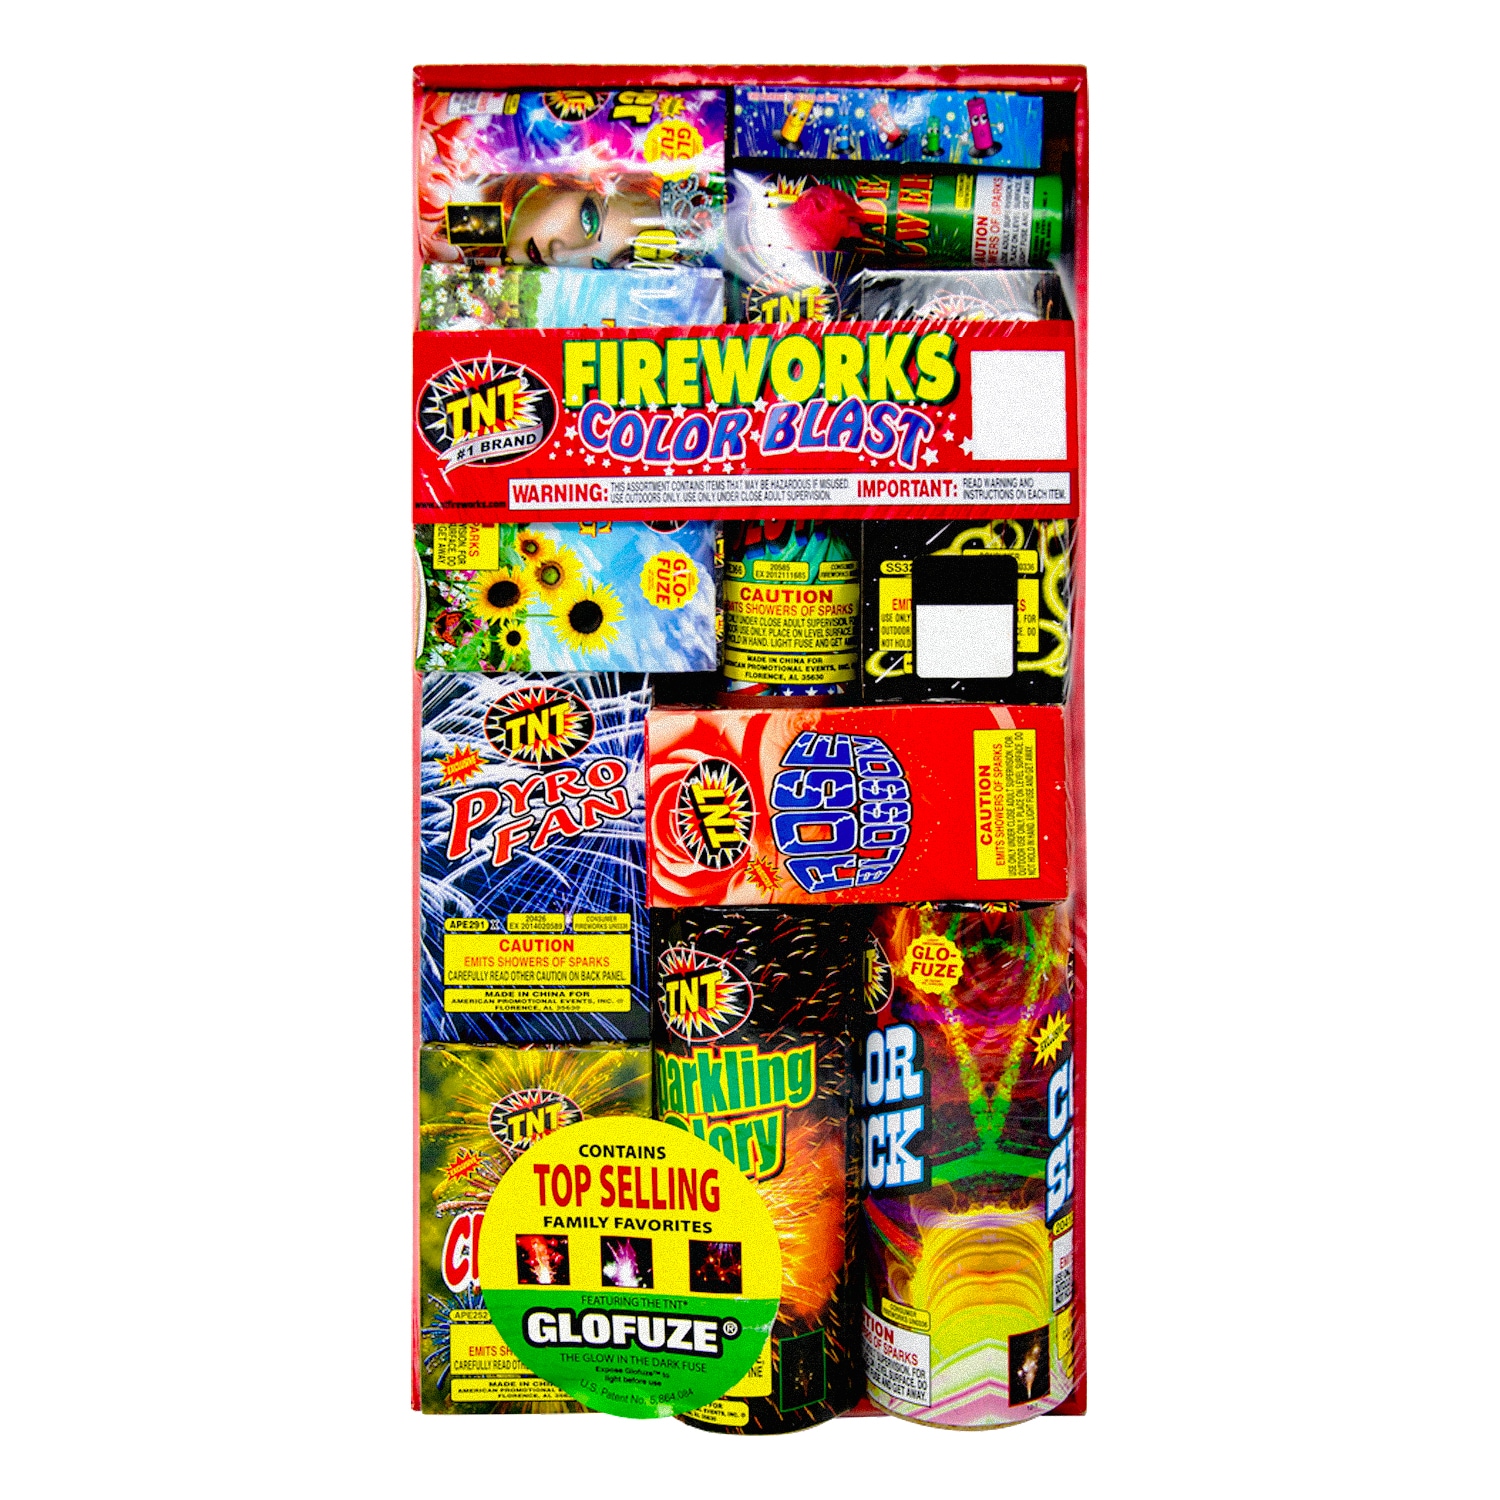 Fireworks, TNT Fireworks